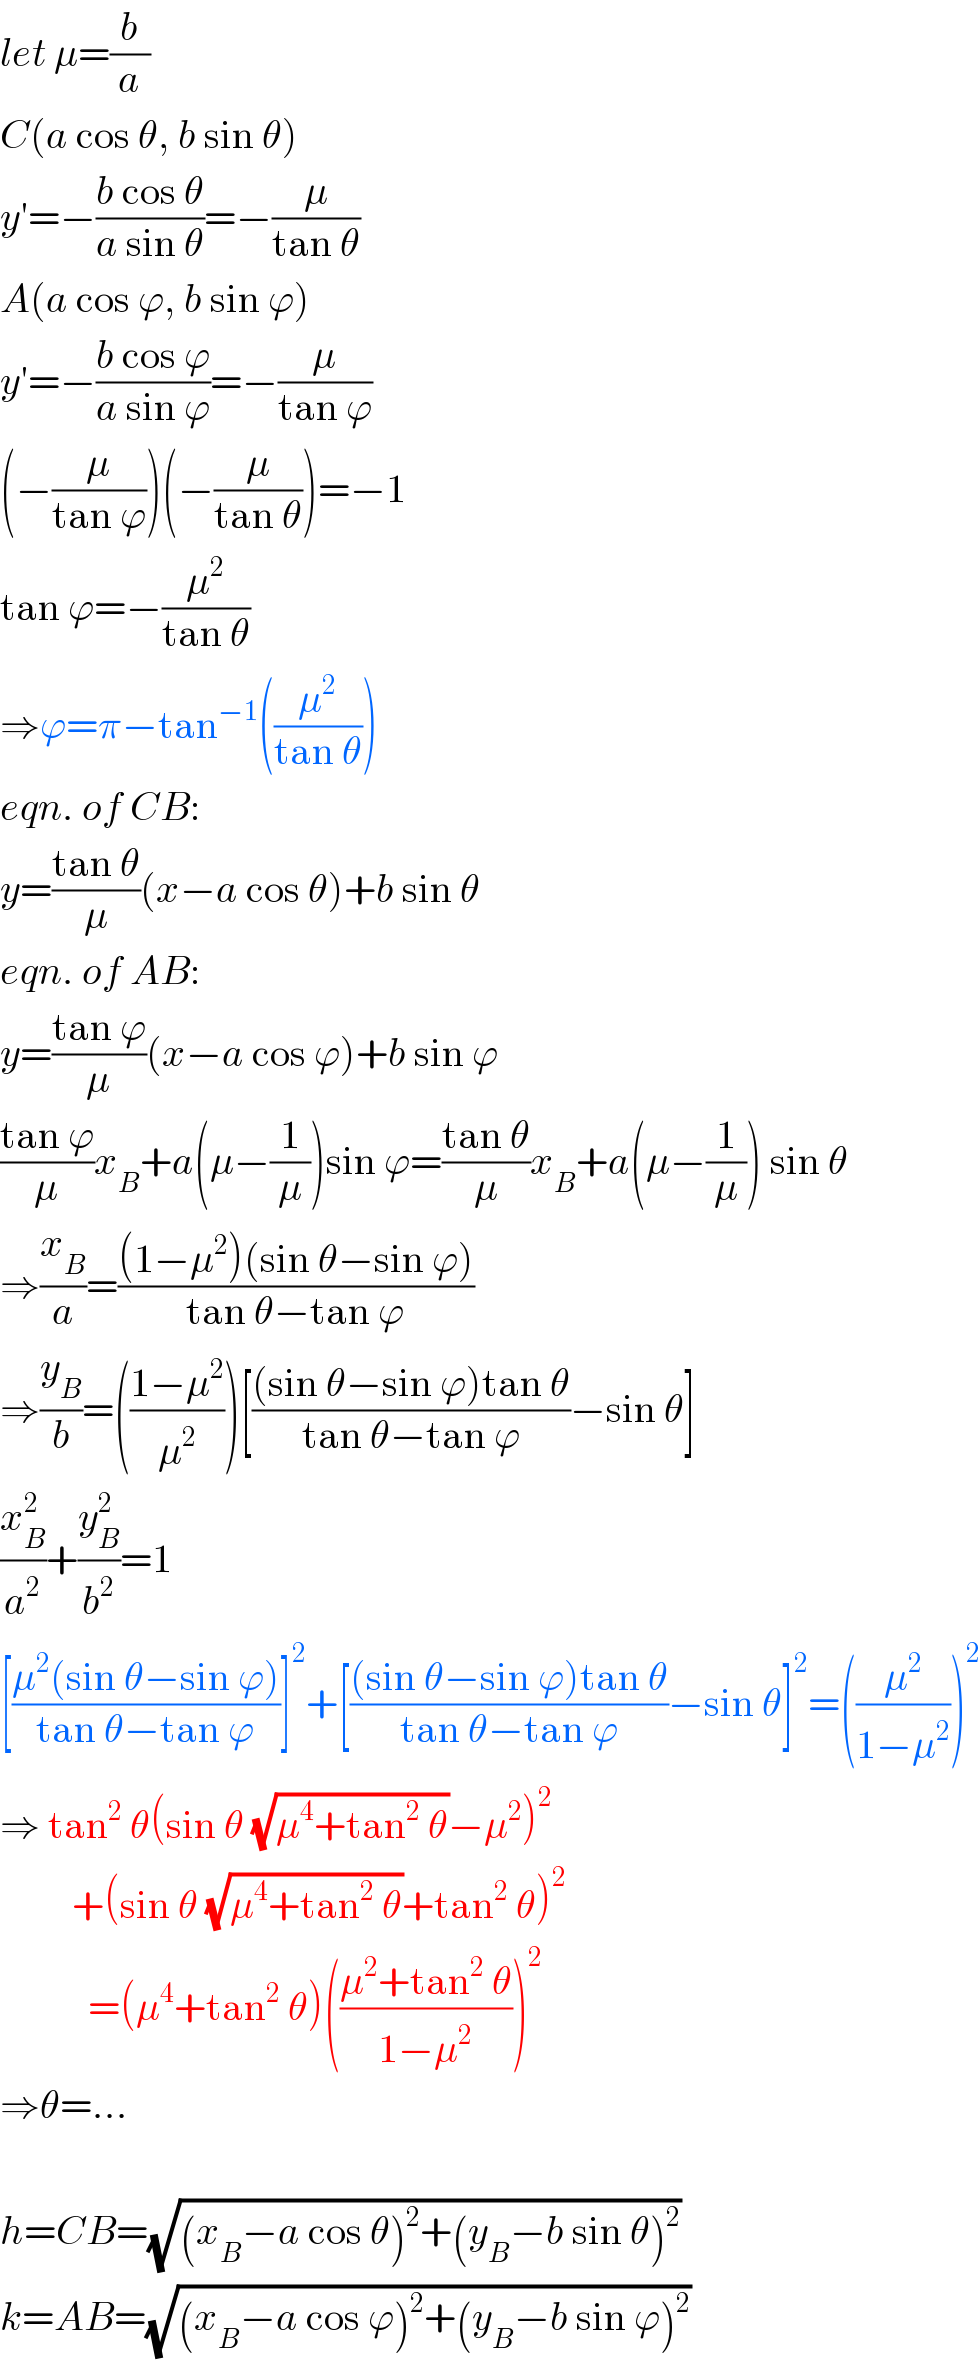 let μ=(b/a)  C(a cos θ, b sin θ)  y′=−((b cos θ)/(a sin θ))=−(μ/(tan θ))  A(a cos ϕ, b sin ϕ)  y′=−((b cos ϕ)/(a sin ϕ))=−(μ/(tan ϕ))  (−(μ/(tan ϕ)))(−(μ/(tan θ)))=−1  tan ϕ=−(μ^2 /(tan θ))  ⇒ϕ=π−tan^(−1) ((μ^2 /(tan θ)))  eqn. of CB:  y=((tan θ)/μ)(x−a cos θ)+b sin θ  eqn. of AB:  y=((tan ϕ)/μ)(x−a cos ϕ)+b sin ϕ  ((tan ϕ)/μ)x_B +a(μ−(1/μ))sin ϕ=((tan θ)/μ)x_B +a(μ−(1/μ)) sin θ  ⇒(x_B /a)=(((1−μ^2 )(sin θ−sin ϕ))/(tan θ−tan ϕ))  ⇒(y_B /b)=(((1−μ^2 )/μ^2 ))[(((sin θ−sin ϕ)tan θ)/(tan θ−tan ϕ))−sin θ]  (x_B ^2 /a^2 )+(y_B ^2 /b^2 )=1  [((μ^2 (sin θ−sin ϕ))/(tan θ−tan ϕ))]^2 +[(((sin θ−sin ϕ)tan θ)/(tan θ−tan ϕ))−sin θ]^2 =((μ^2 /(1−μ^2 )))^2   ⇒ tan^2  θ(sin θ (√(μ^4 +tan^2  θ))−μ^2 )^2            +(sin θ (√(μ^4 +tan^2  θ))+tan^2  θ)^2              =(μ^4 +tan^2  θ)(((μ^2 +tan^2  θ)/(1−μ^2 )))^2   ⇒θ=...    h=CB=(√((x_B −a cos θ)^2 +(y_B −b sin θ)^2 ))  k=AB=(√((x_B −a cos ϕ)^2 +(y_B −b sin ϕ)^2 ))  